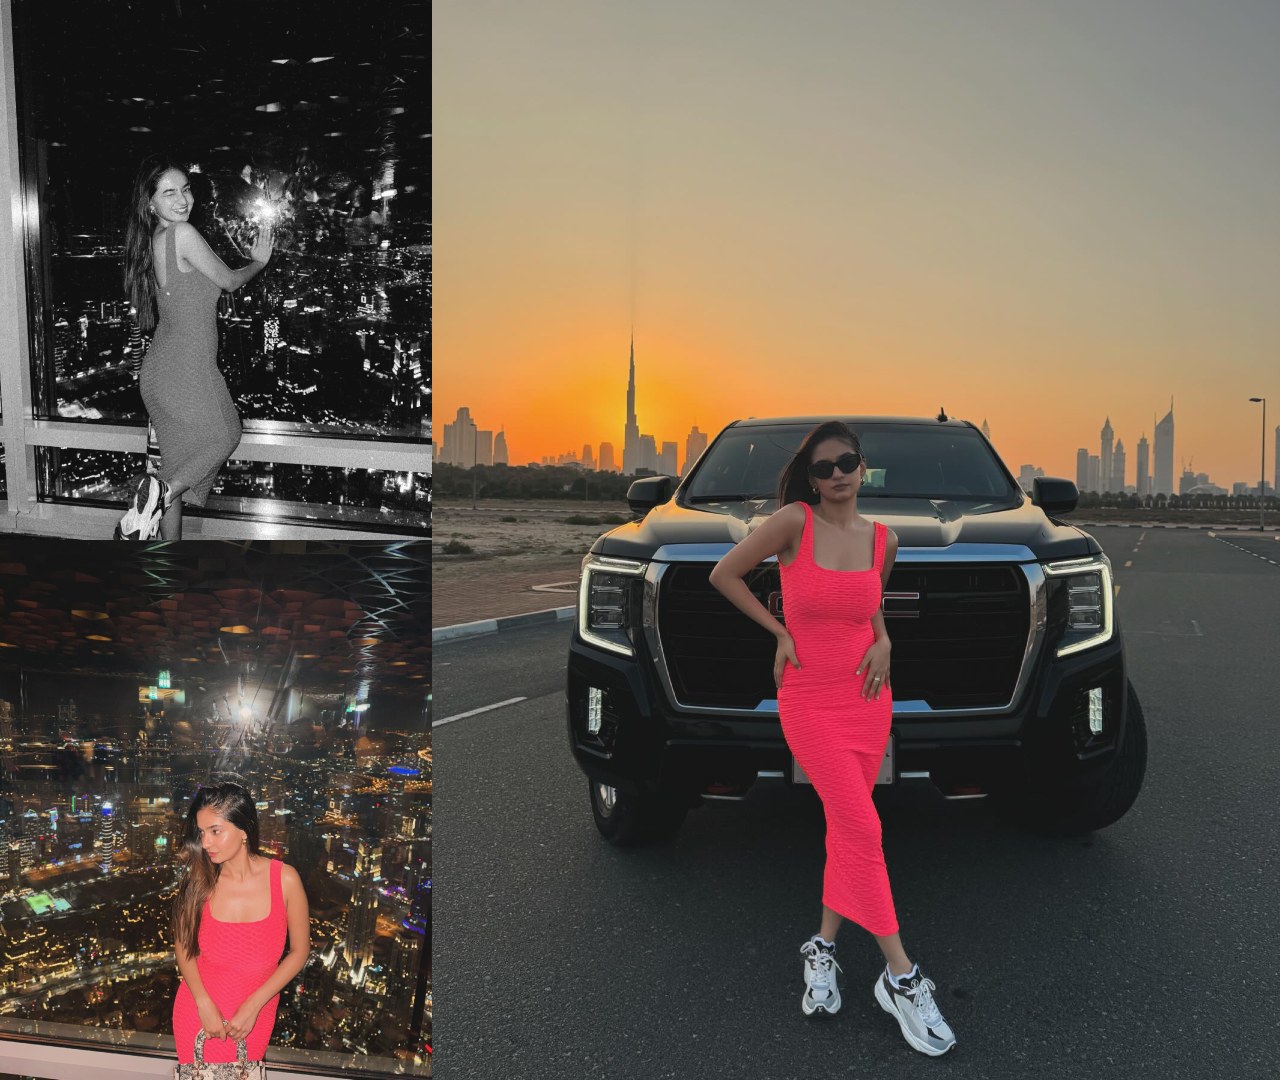 दुबई में आलीशान छुट्टियां मना रही है अनुष्का सेन, गुलाबी बॉडीकॉन ड्रेस में दिखाया हुस्न 38499